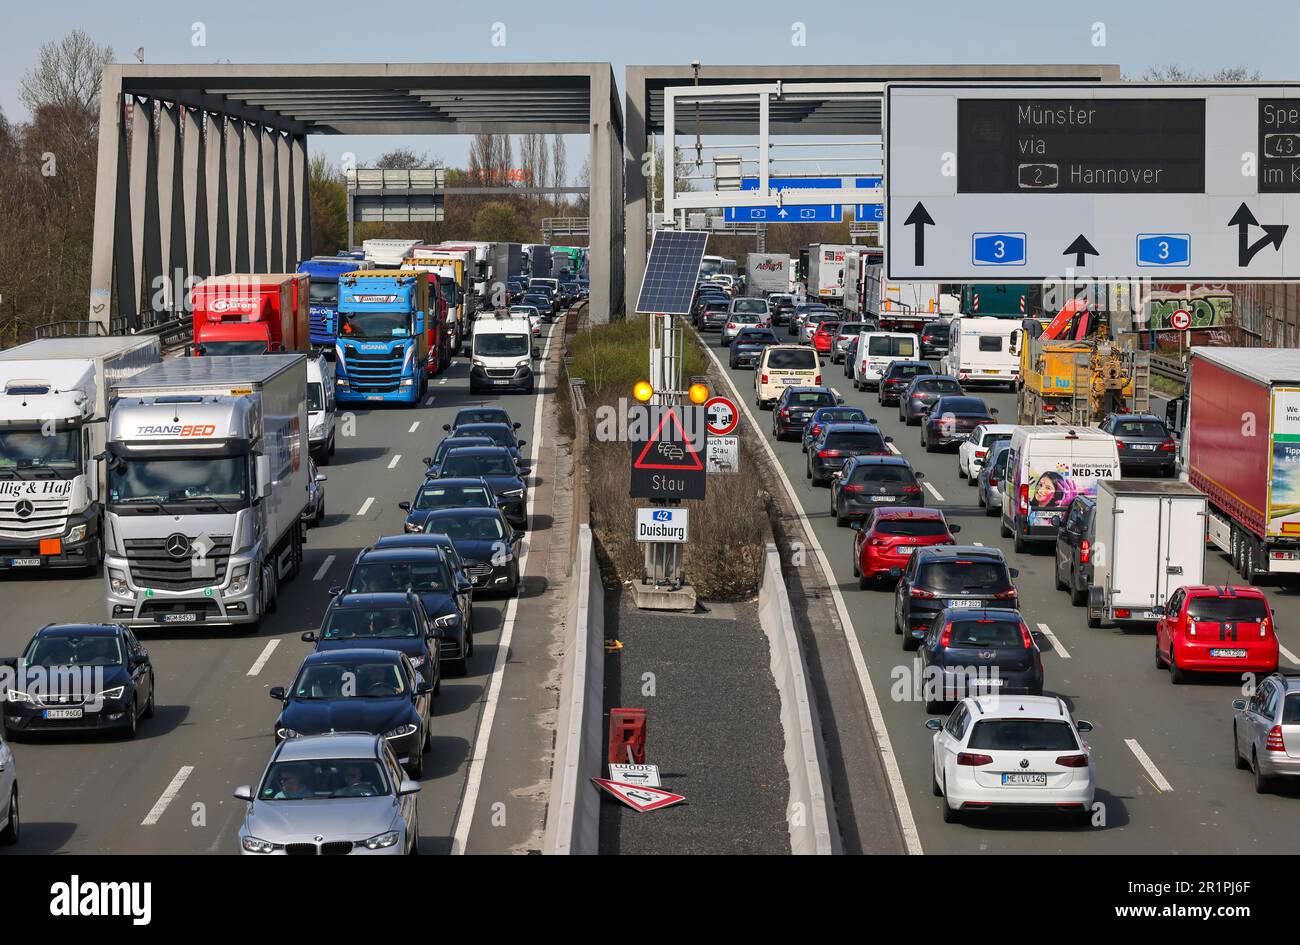 Oberhausen, Rhénanie-du-Nord-Westphalie, Allemagne - embouteillage sur l'autoroute A3, voyage de Pâques, voitures, fourgonnettes, camions, les caravanes et les campeurs sont dans l'embouteillage. Banque D'Images